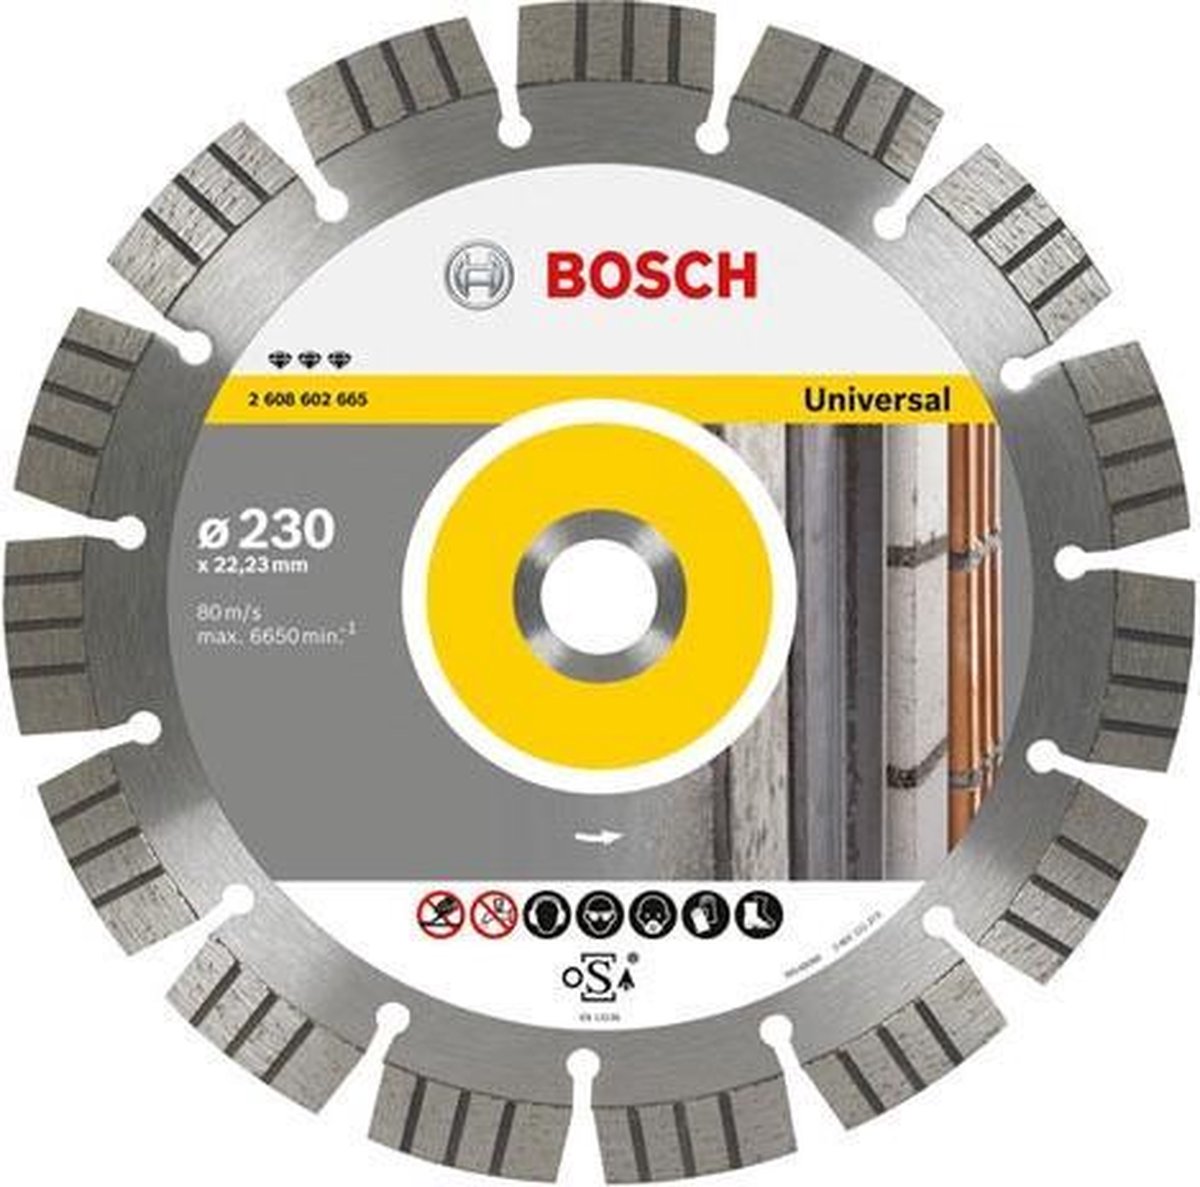 Bosch - Diamantdoorslijpschijf Best for Universal and Metal 115 x 22,23 x 2,2 x 12 mm